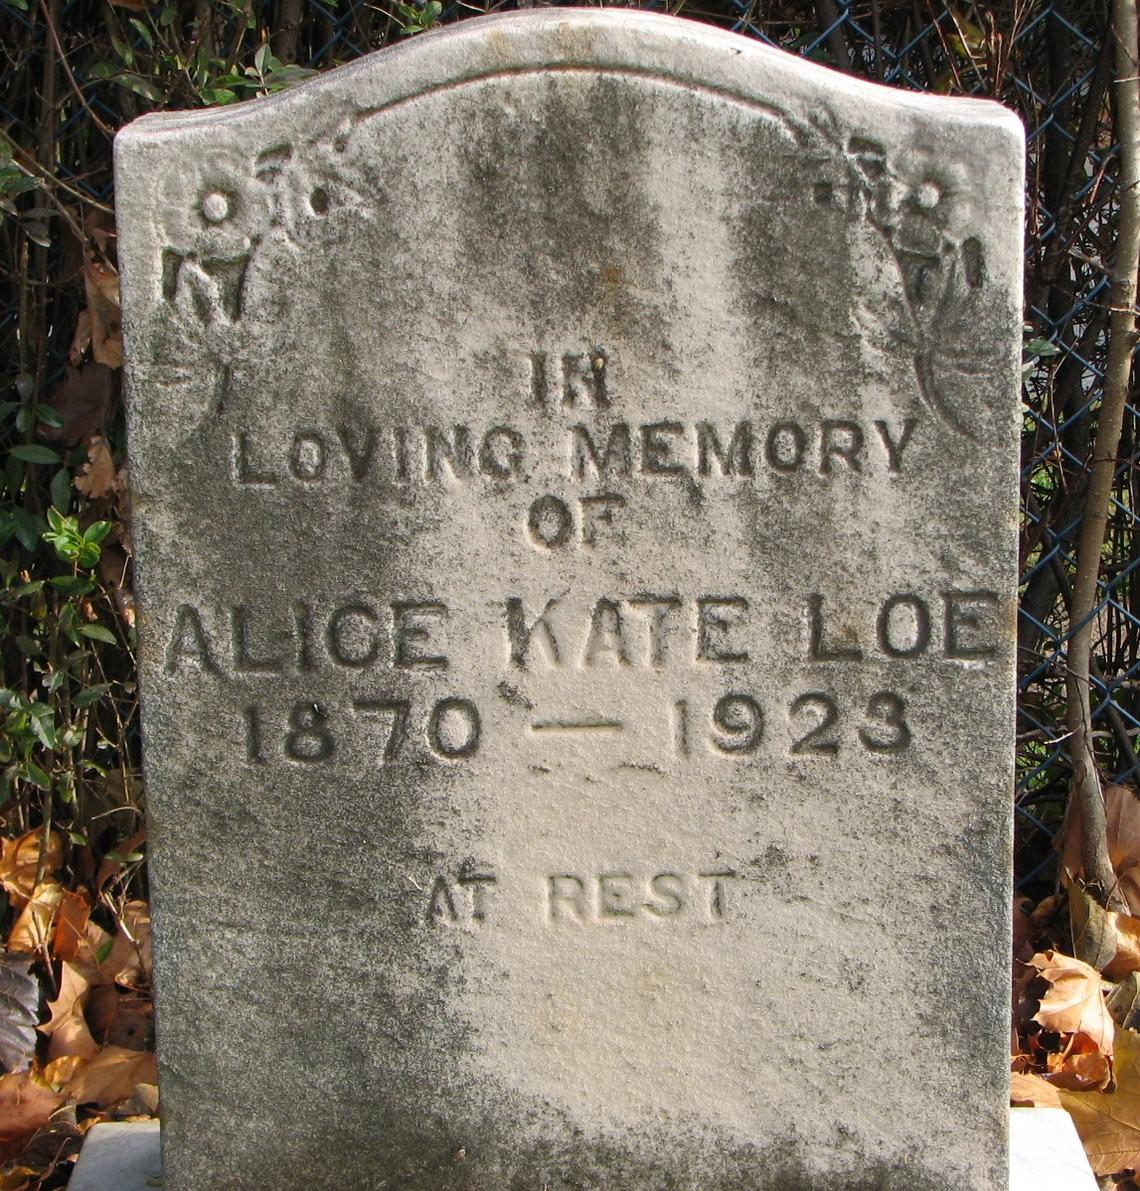 Alice Kate LOE 1870-1923